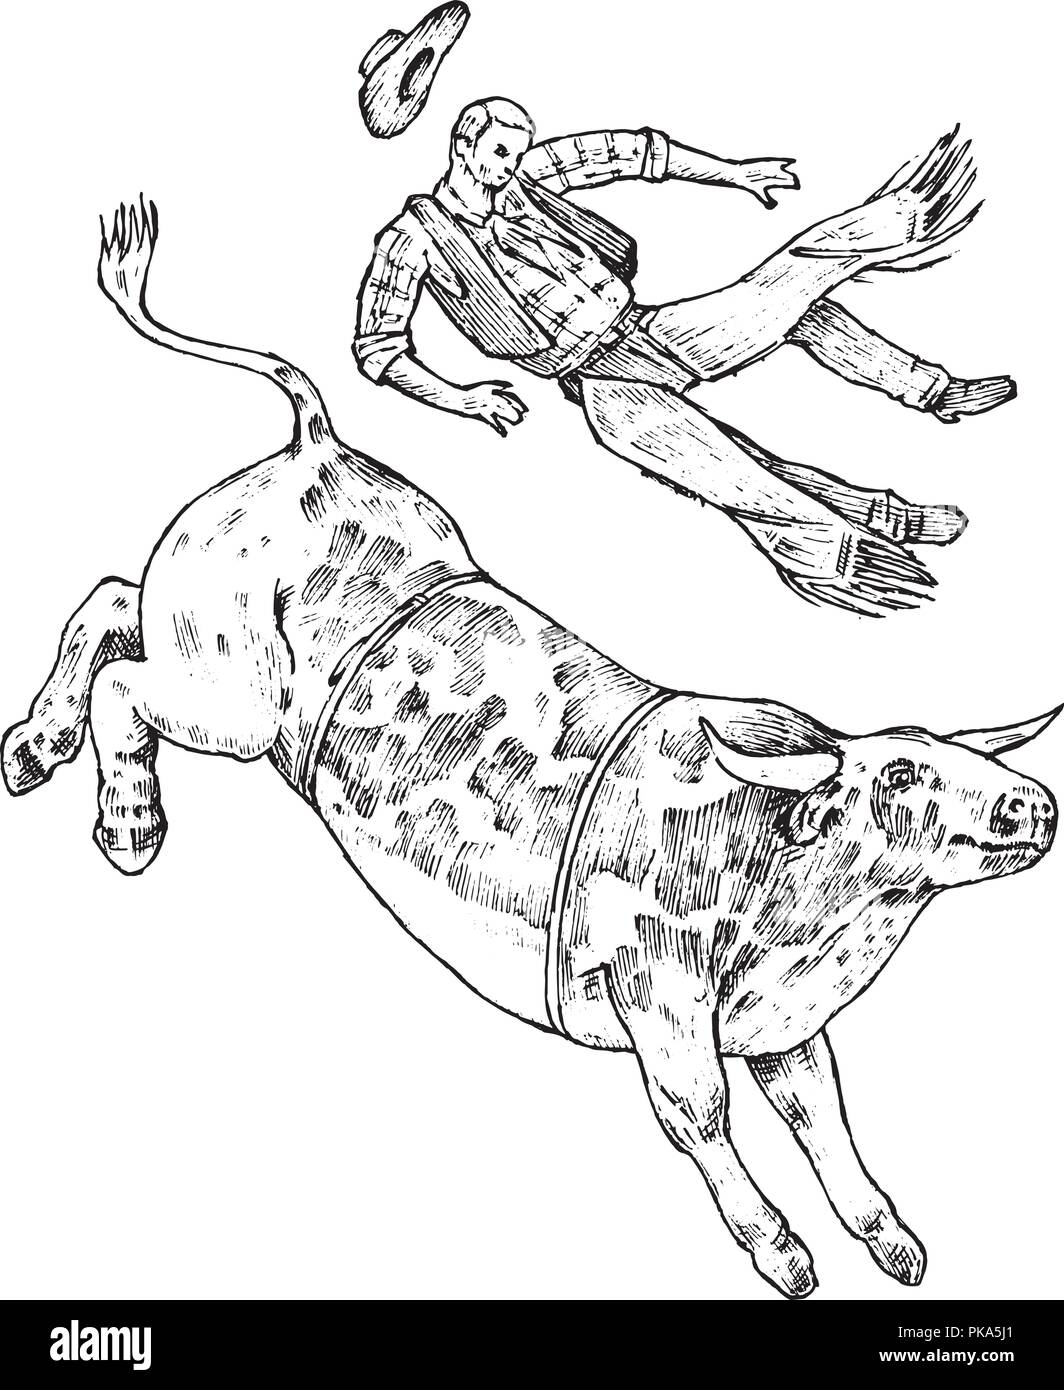 Bull enragé attaque le matador ou torero. Corrida de toros. La performance traditionnelle espagnole. Vintage style. Vieux croquis dessinés à la main, gravée. Vector illustration. Illustration de Vecteur